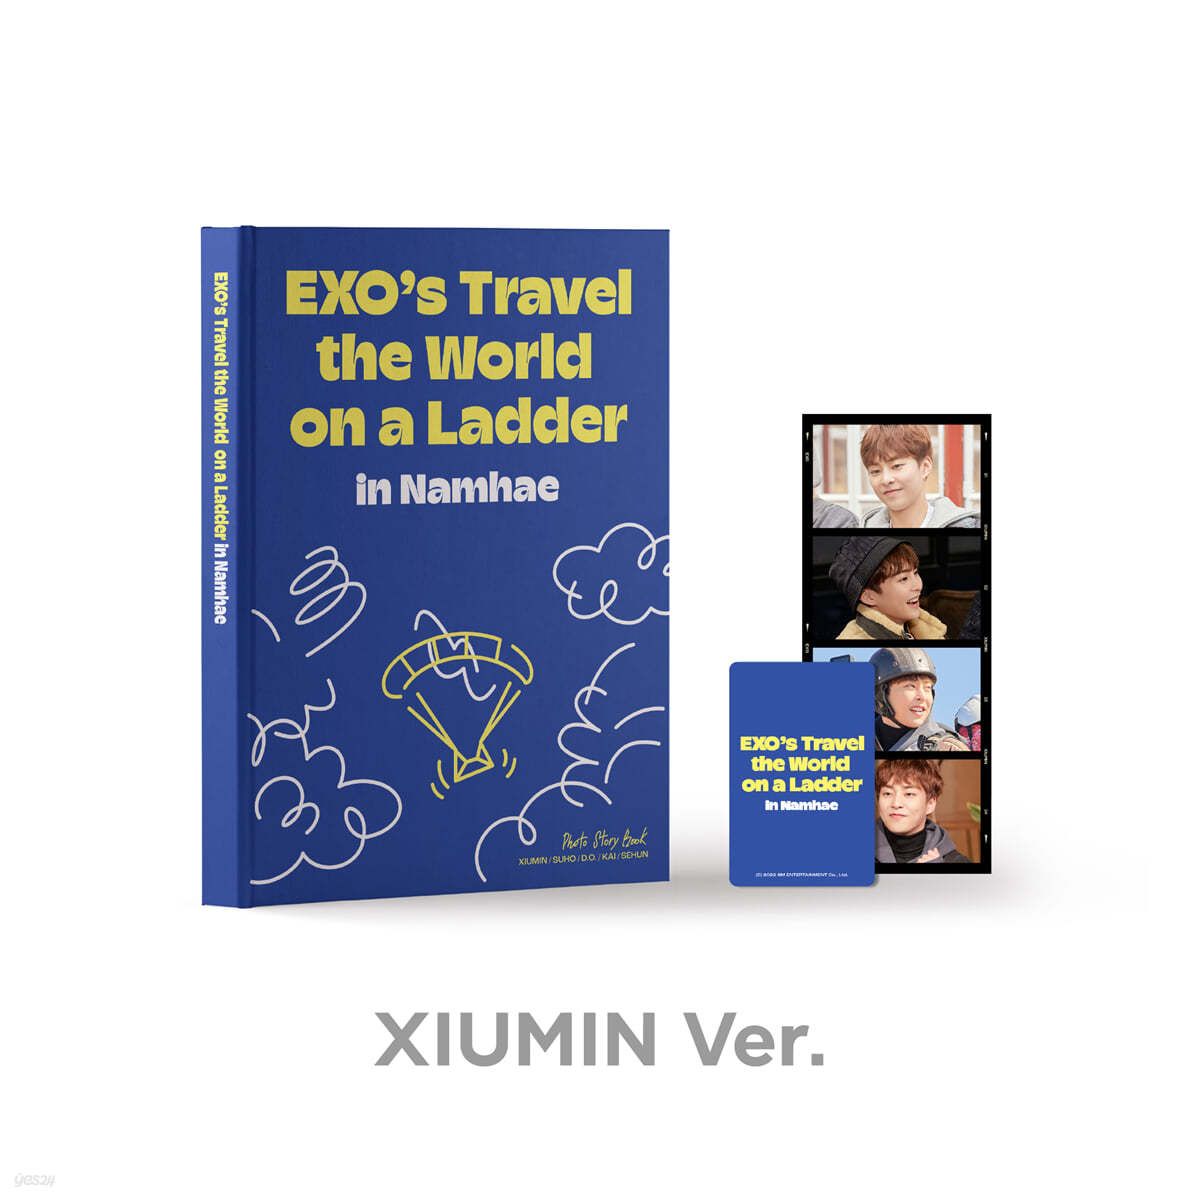 엑소 (EXO) - [엑소의 사다리 타고 세계여행 - 남해 편] PHOTO STORY BOOK [XIUMIN]